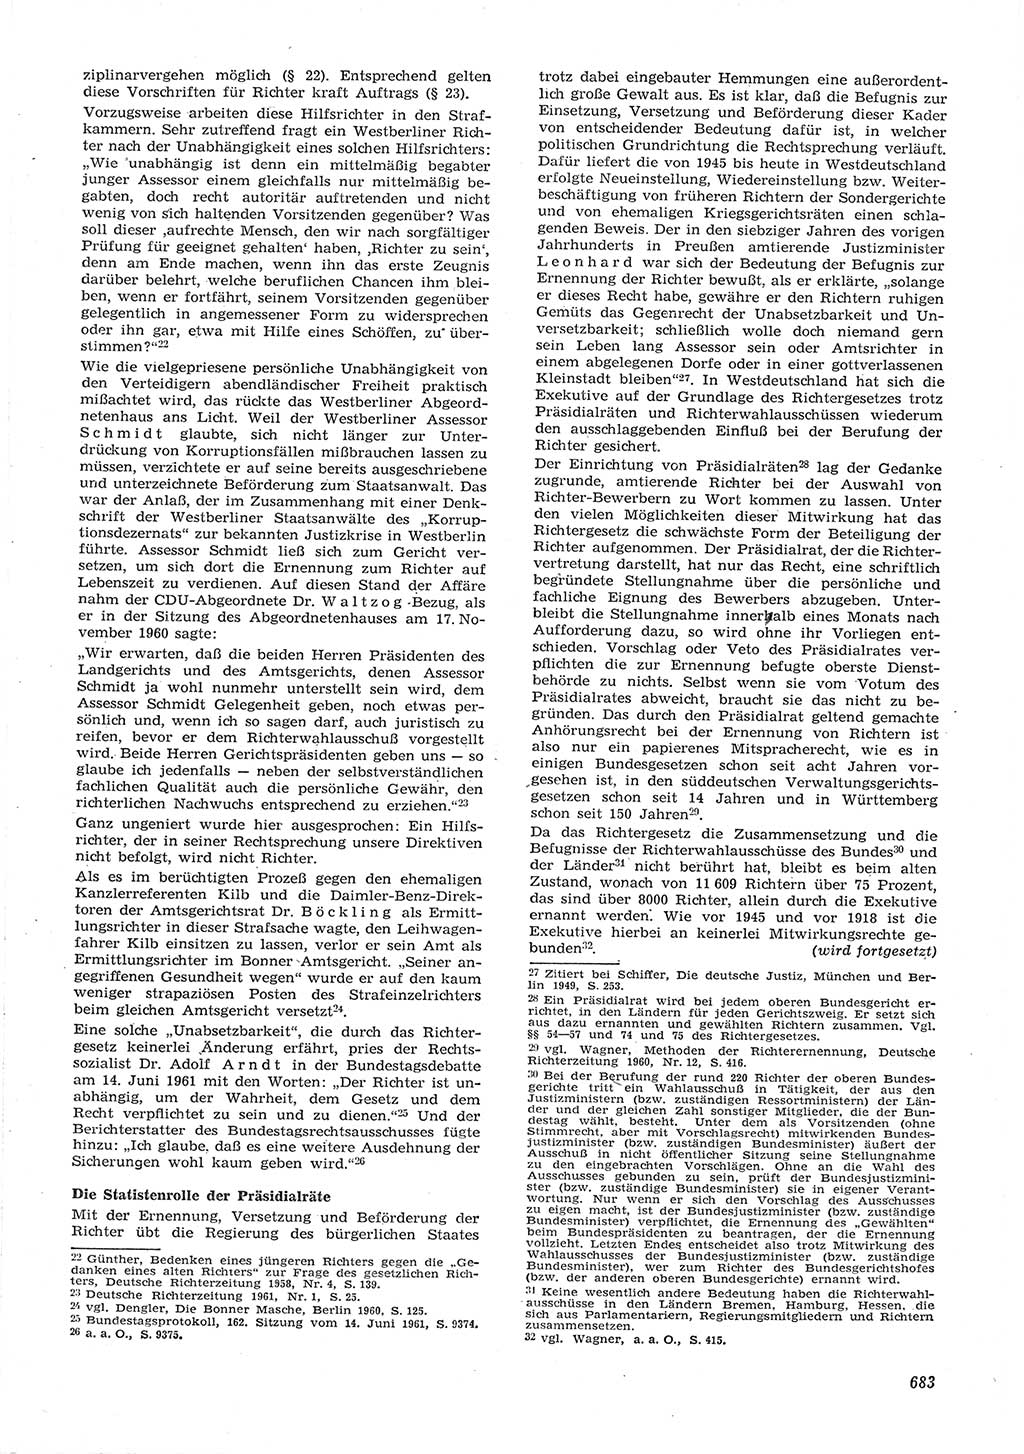 Neue Justiz (NJ), Zeitschrift für Recht und Rechtswissenschaft [Deutsche Demokratische Republik (DDR)], 15. Jahrgang 1961, Seite 683 (NJ DDR 1961, S. 683)